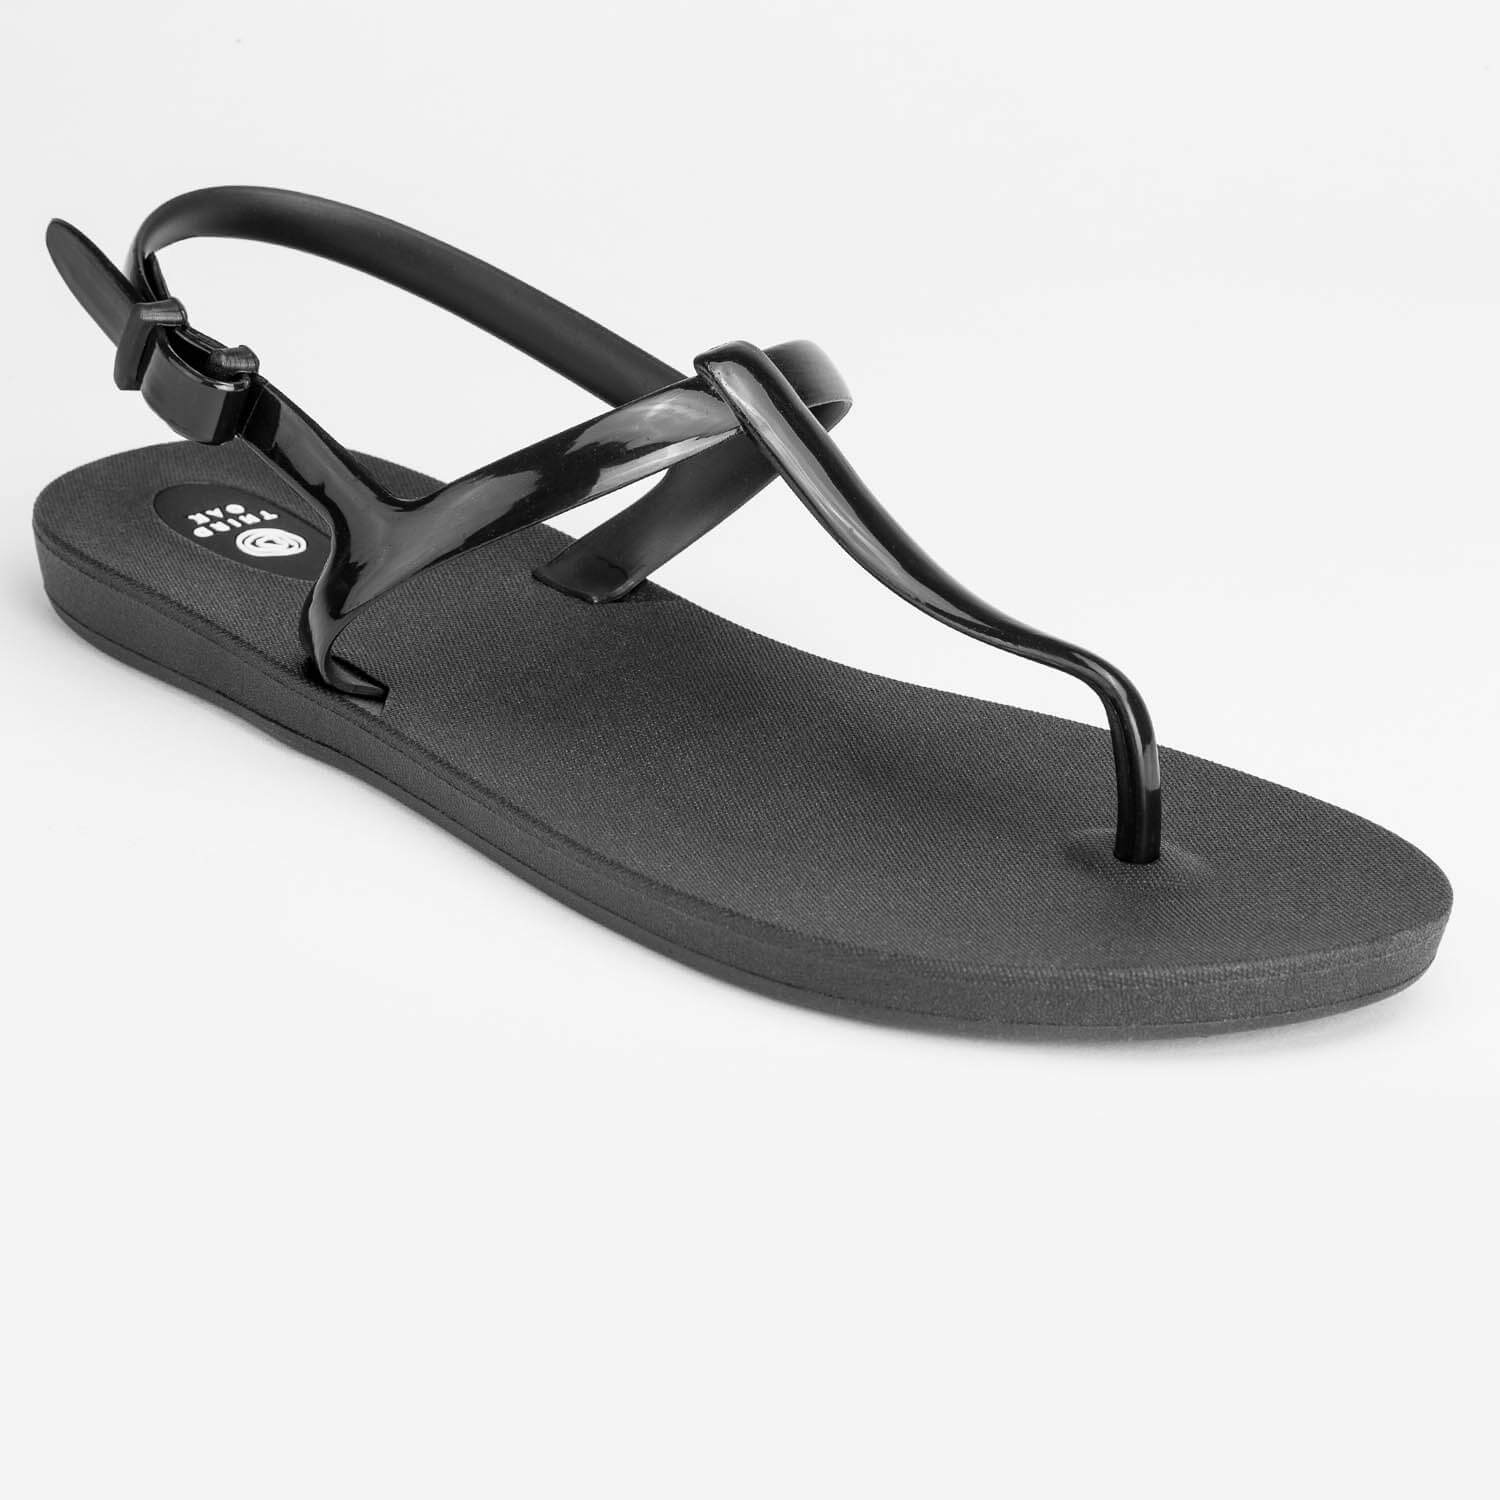 Journey | Women's Comfortable Sandals | Third Oak Shoes